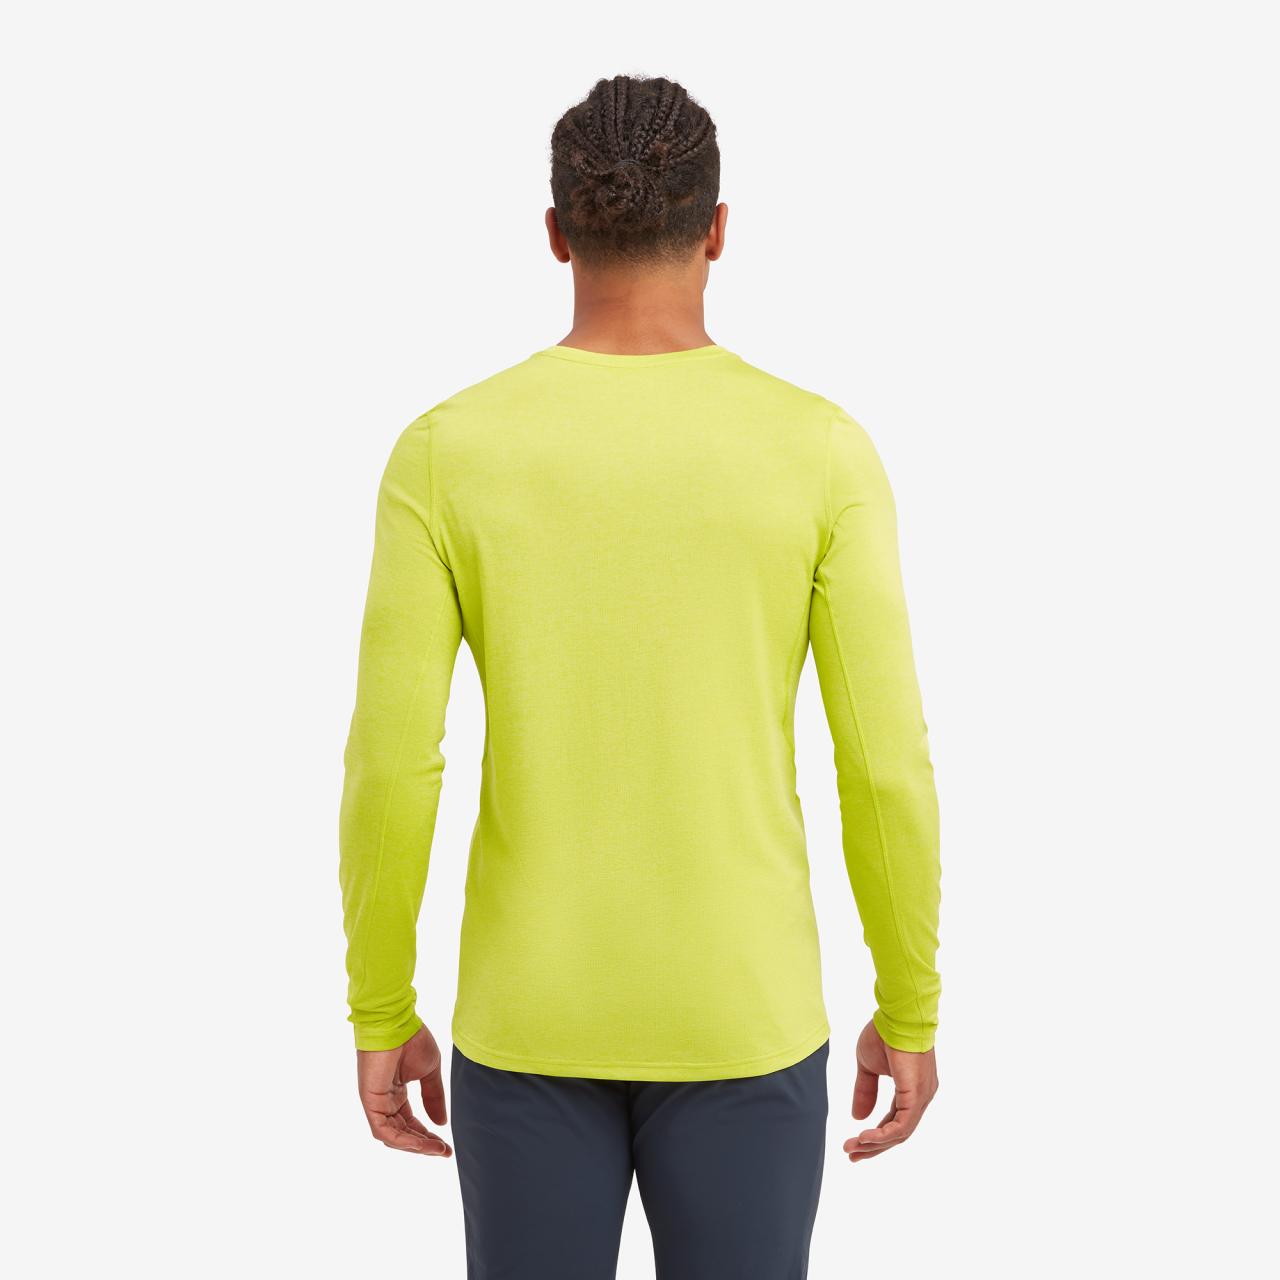 DART LONG SLEEVE T-SHIRT-CITRUS SPRING-XXXL pánské triko dlouhý ruk. žlutozelené